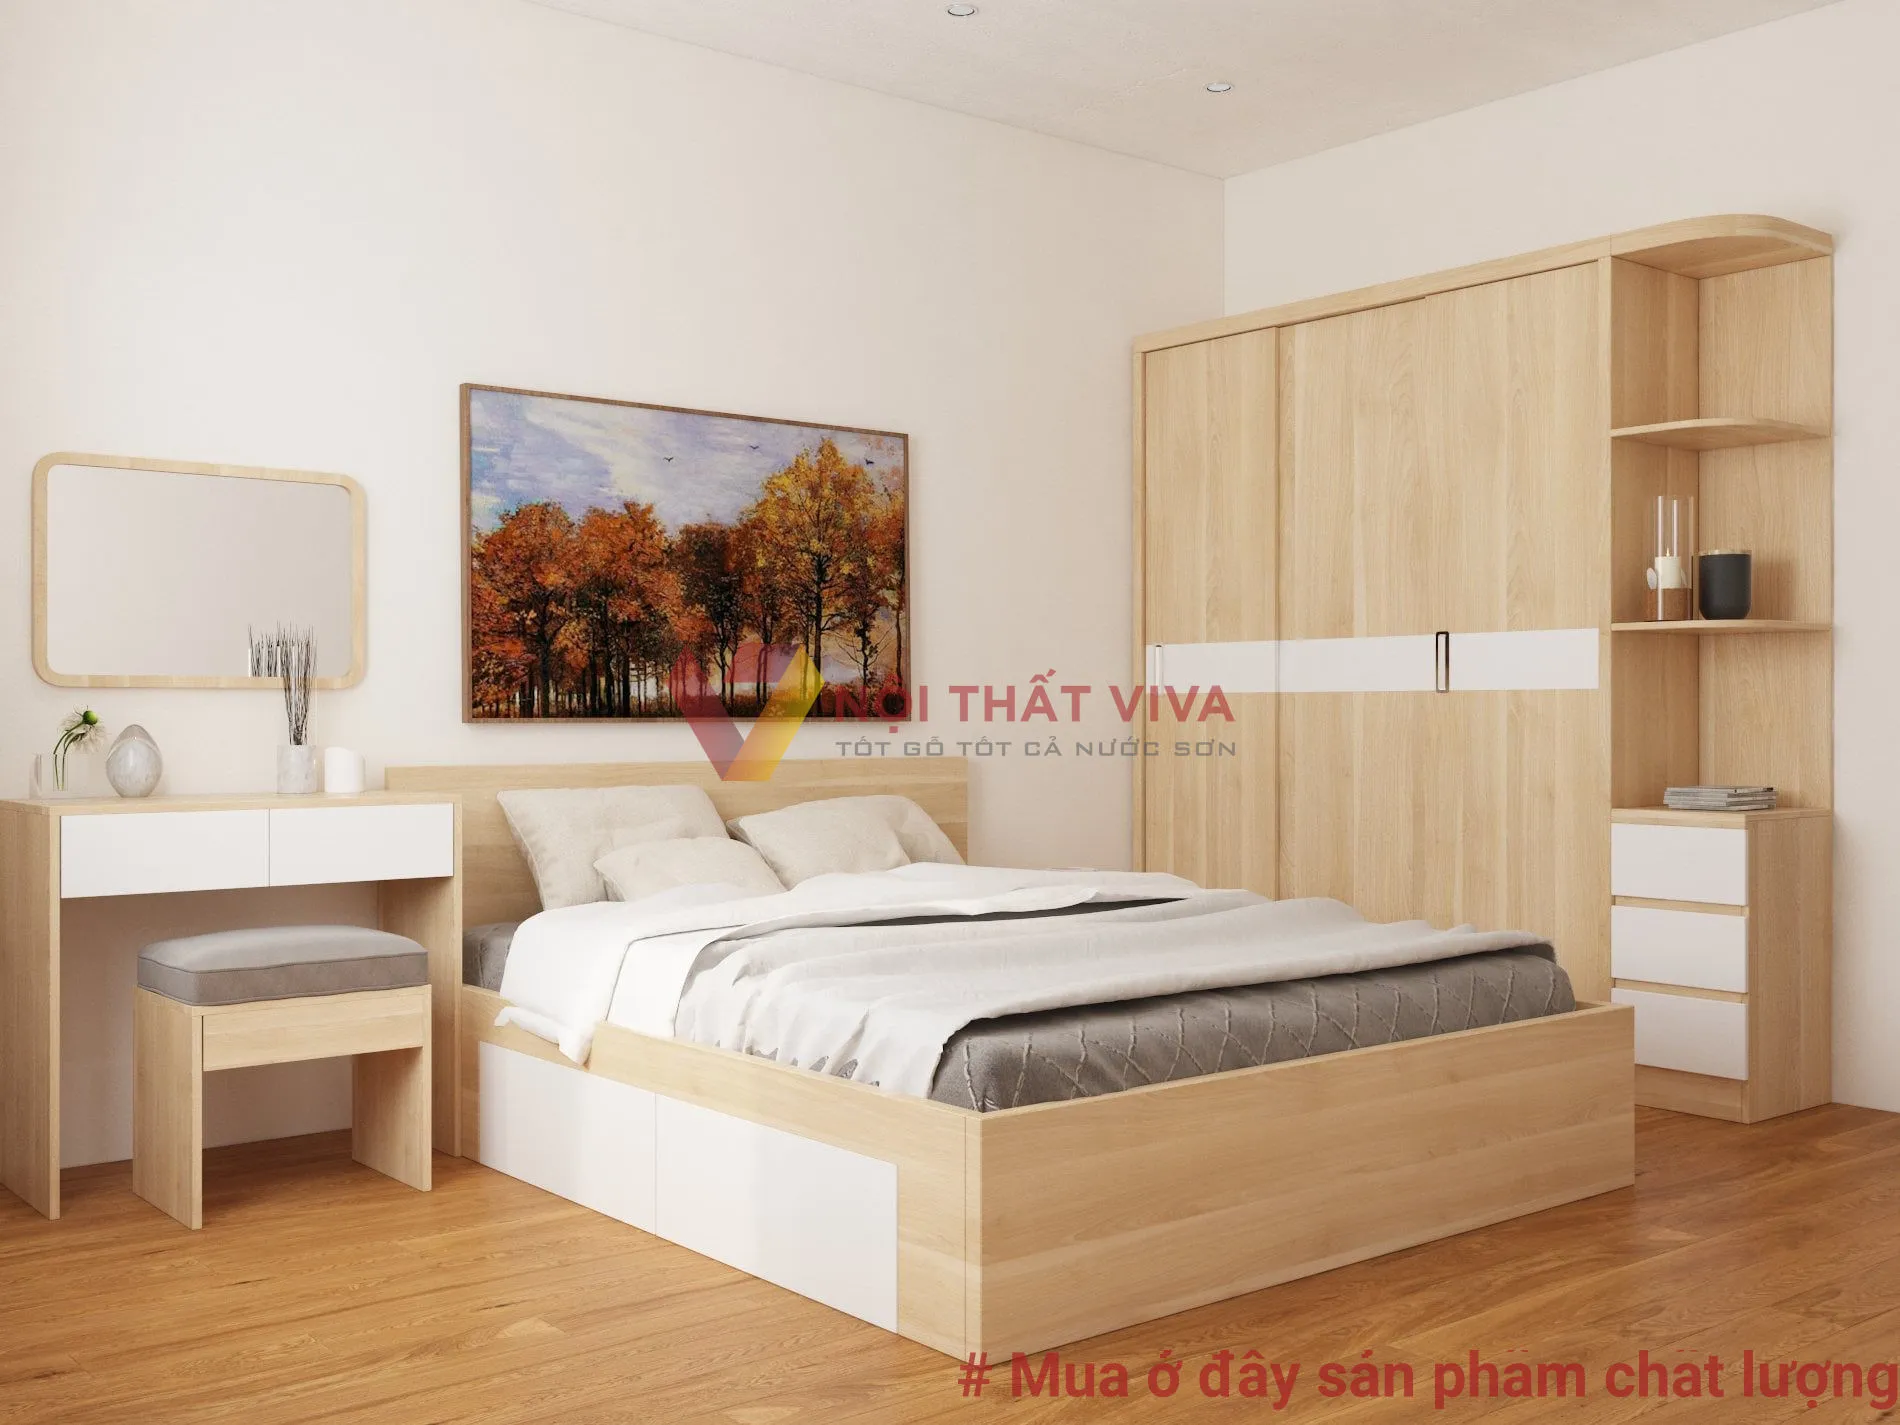 Combo nội thất phòng ngủ đẹp hiện đại, giá rẻ, chất lượng tại Nội thất Viva.